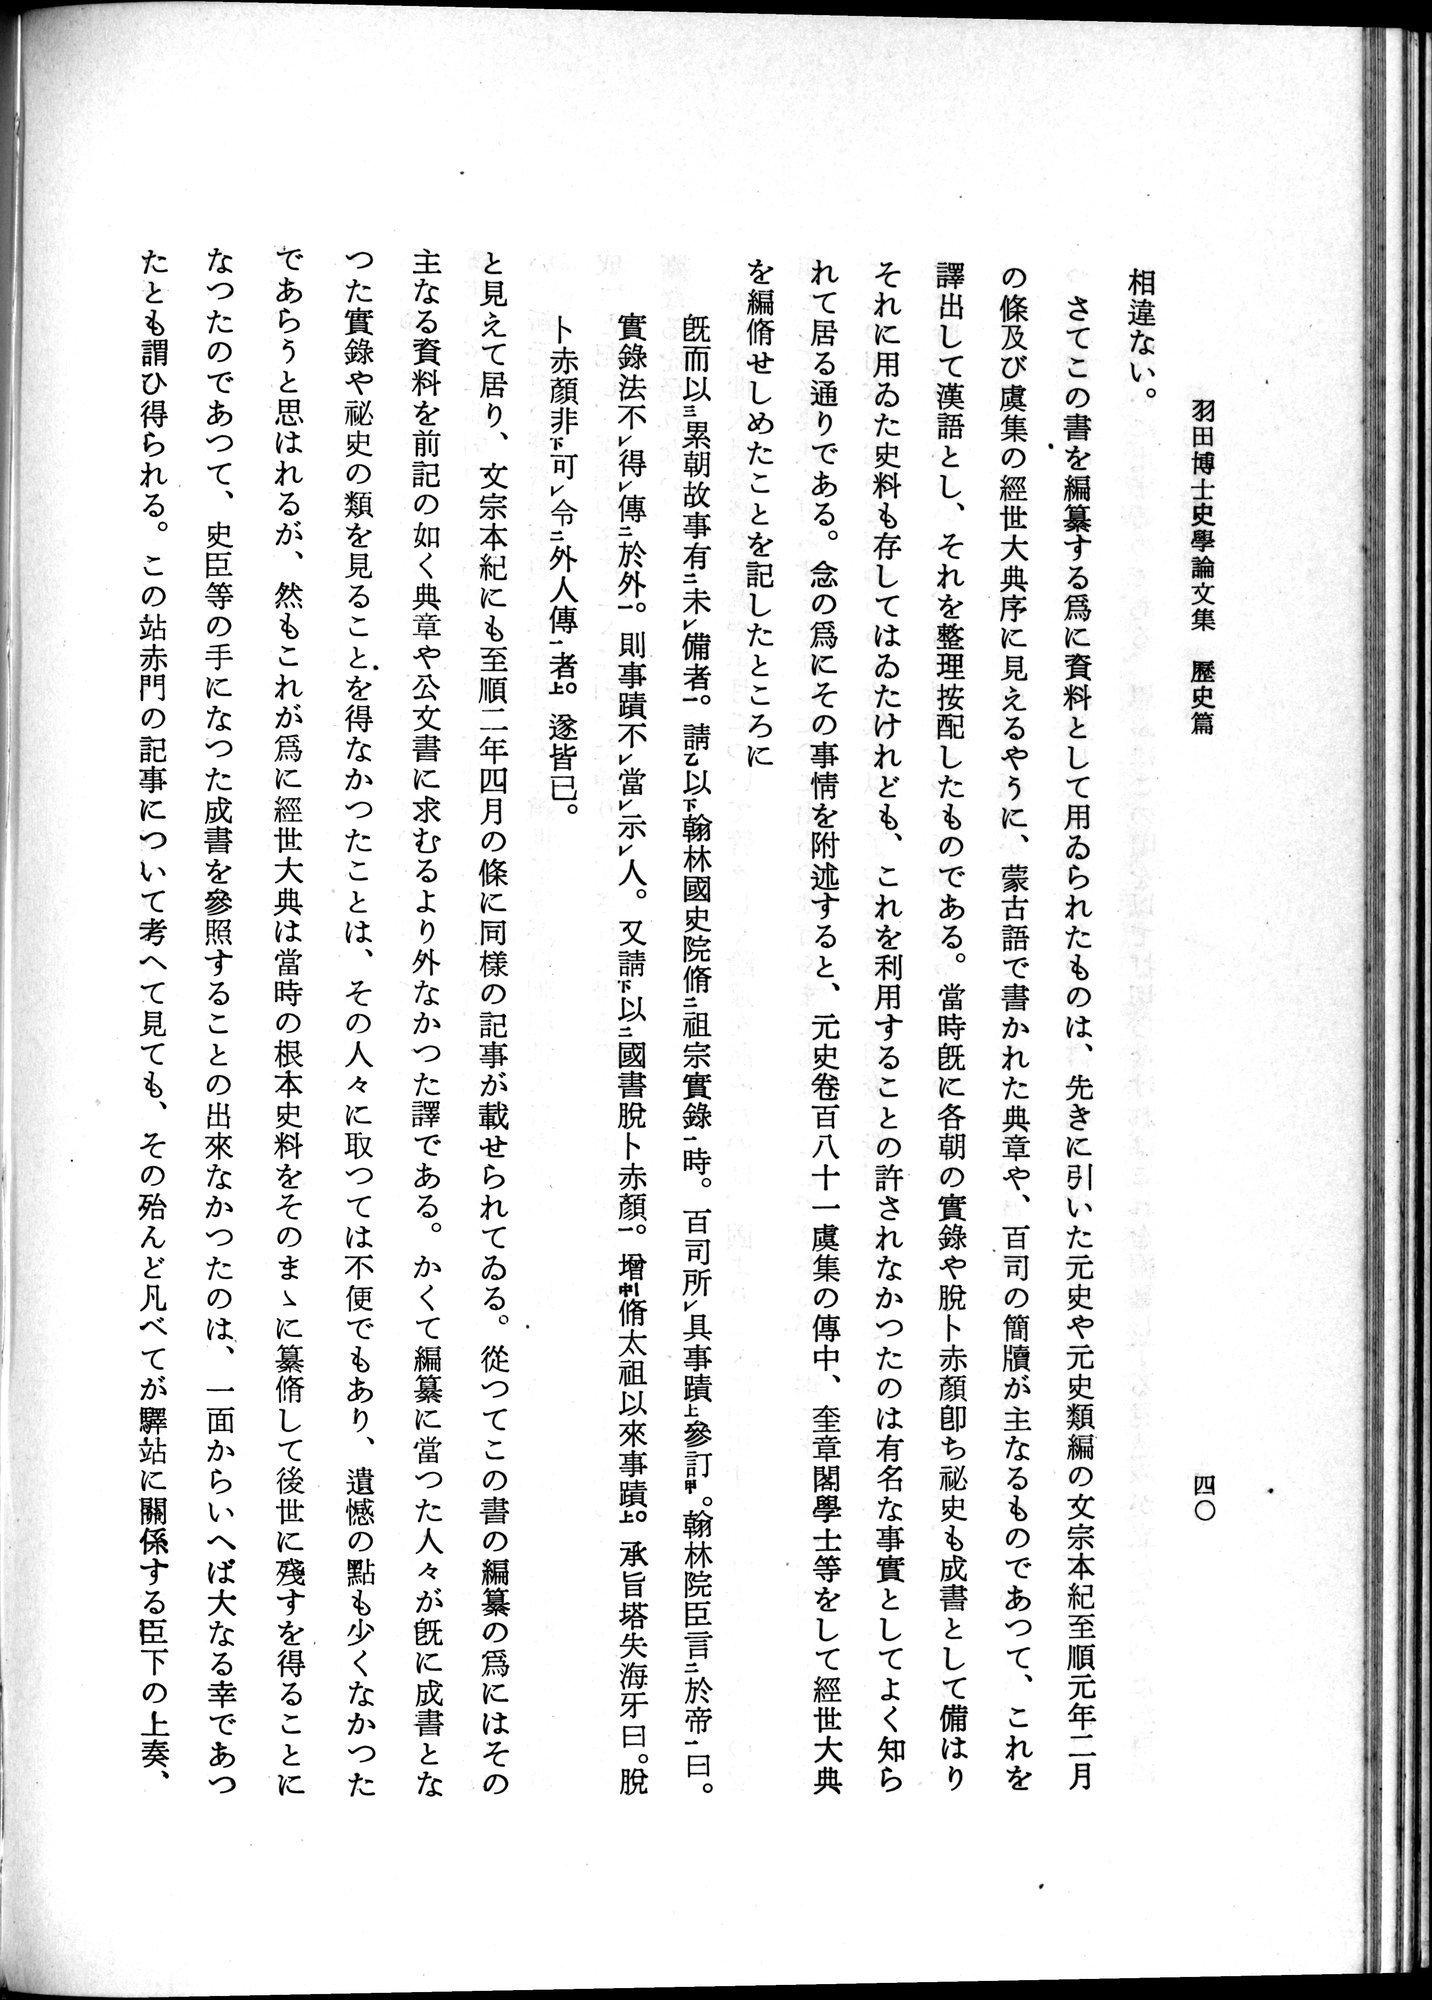 羽田博士史学論文集 : vol.1 / Page 78 (Grayscale High Resolution Image)